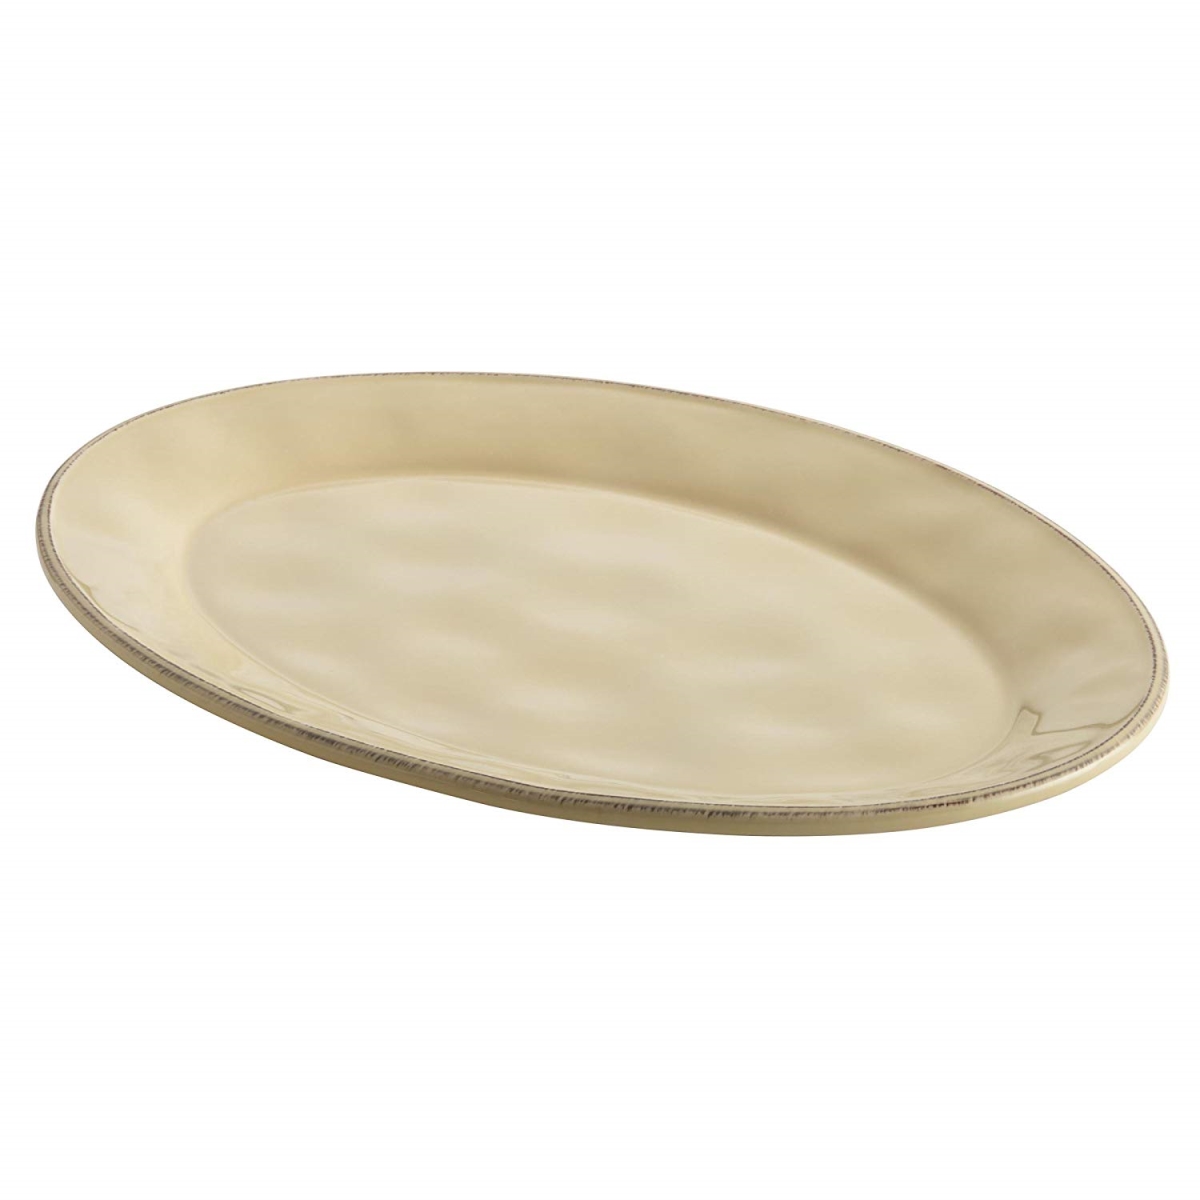 47921 14 In. Cucina Dinnerware Ceramic Round Serving Bowl, Almond Cream